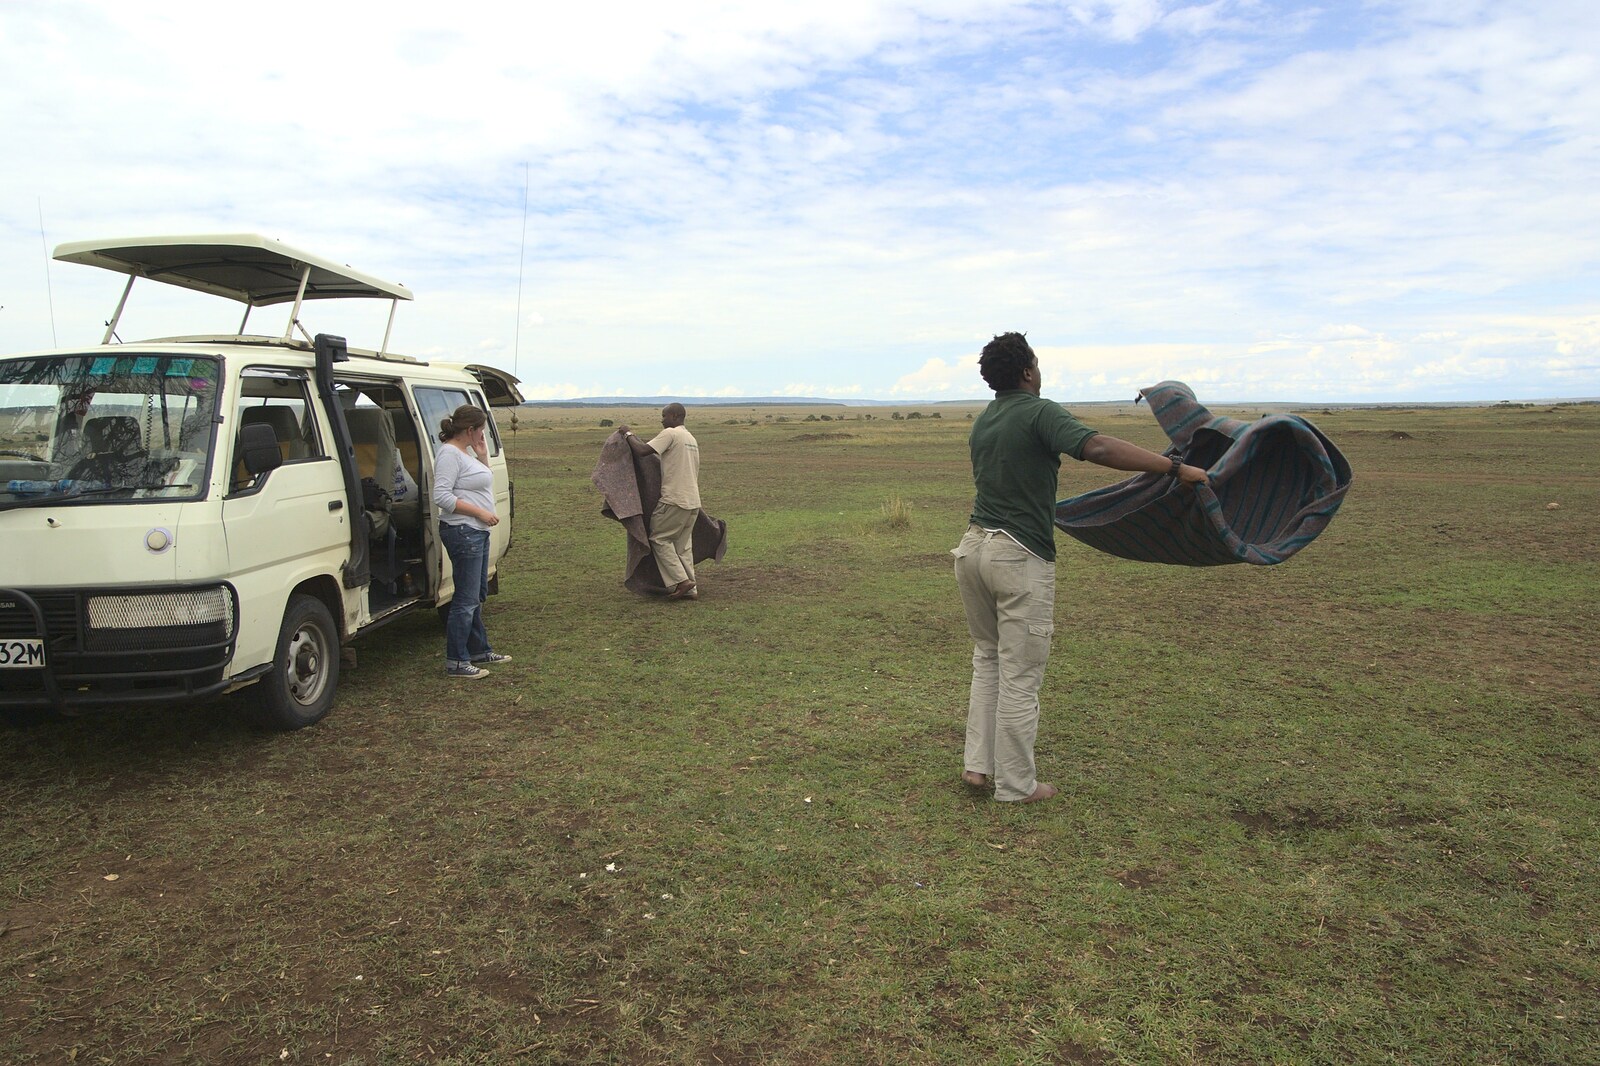 Maasai Mara Safari and a Maasai Village, Ololaimutia, Kenya - 5th November 2010: Picnic over, Will shakes out the blanket